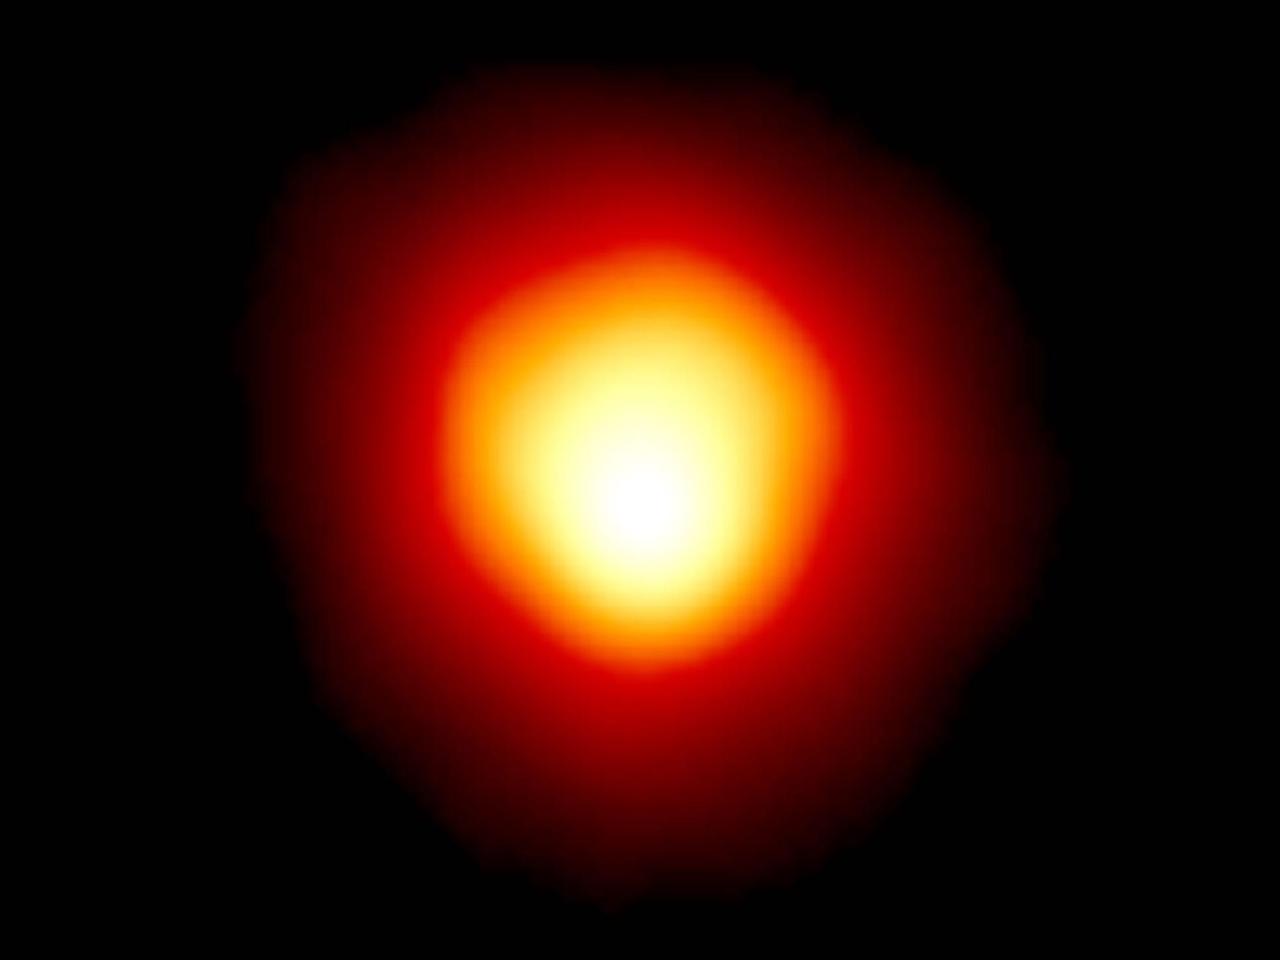 ハッブル宇宙望遠鏡が撮影したベテルギウス。